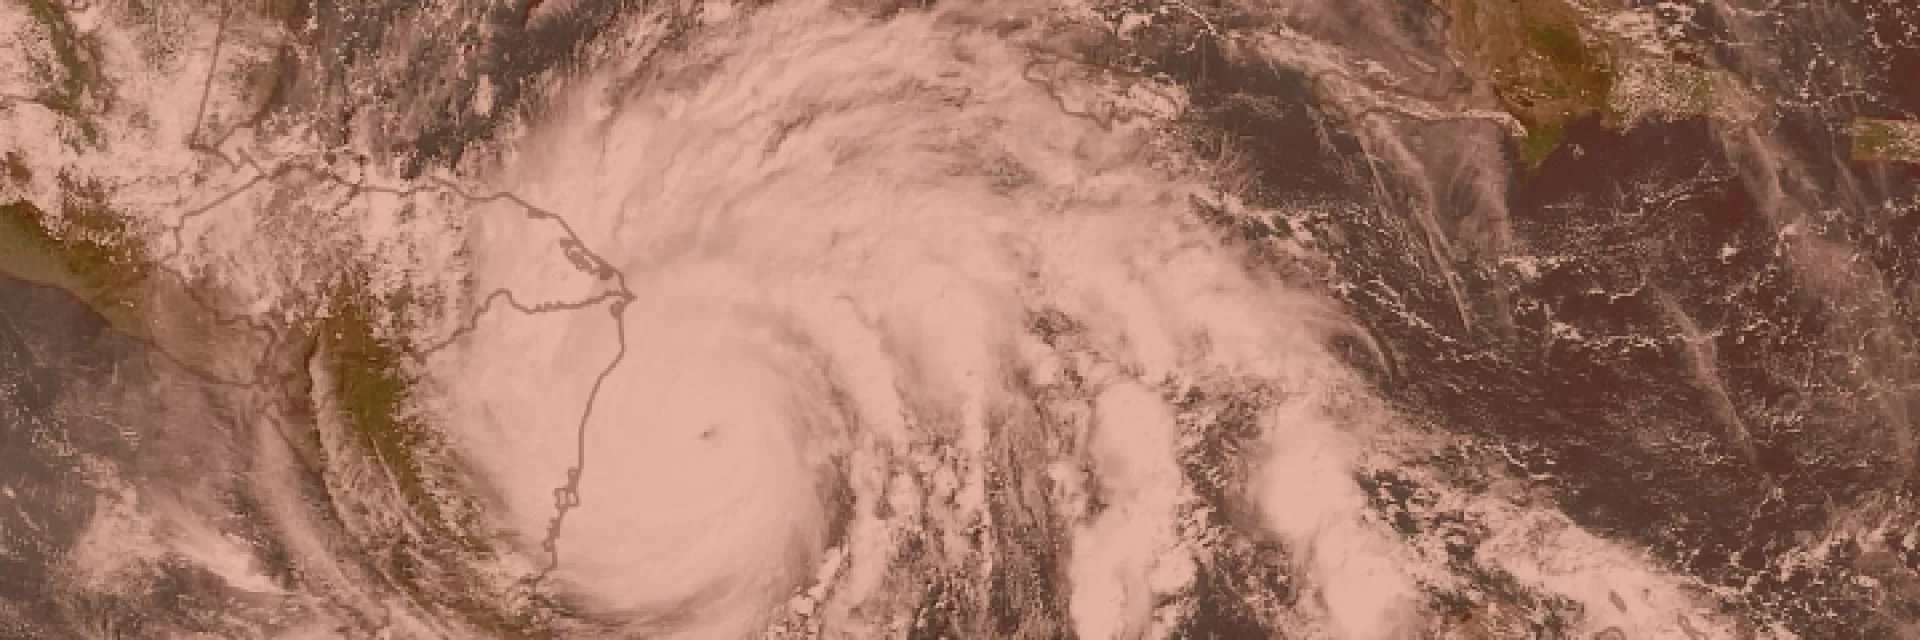 Hurricane Iota makes landfall Image:NASA